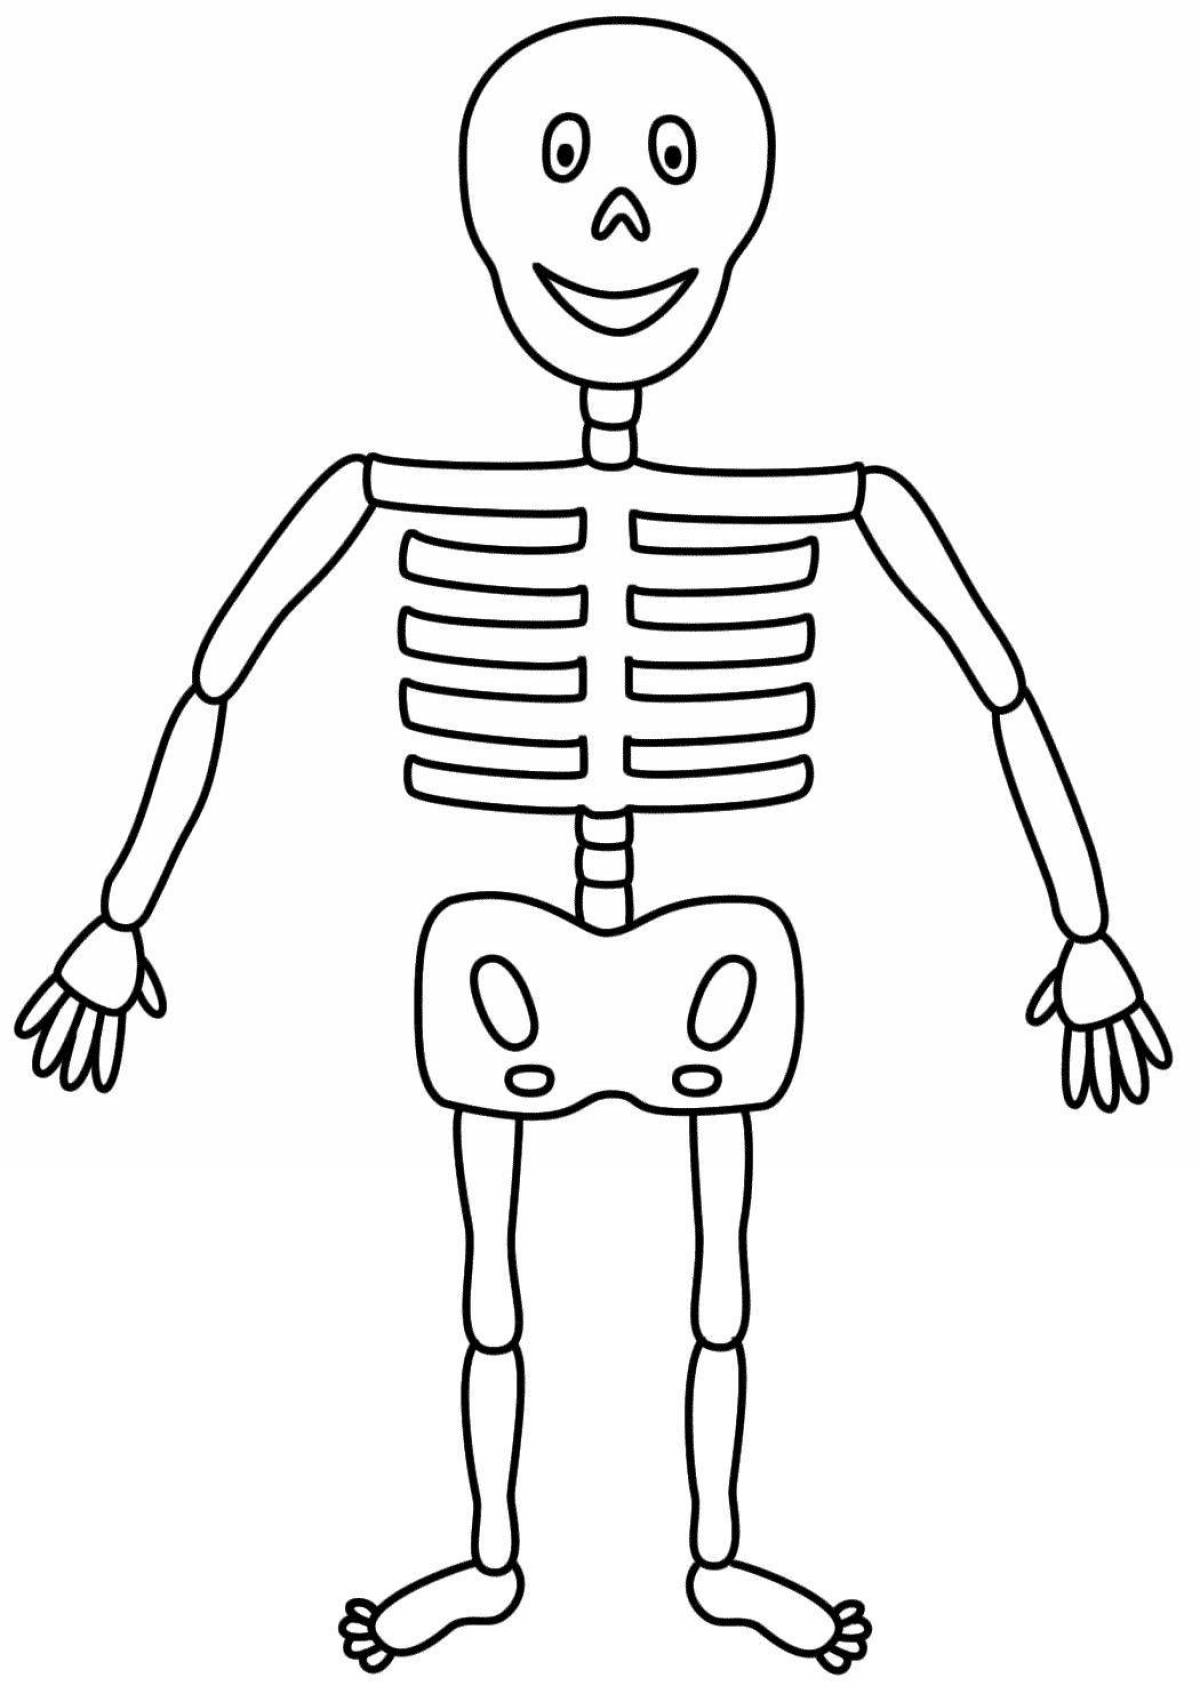 Раскраска с изображением человеческого скелета